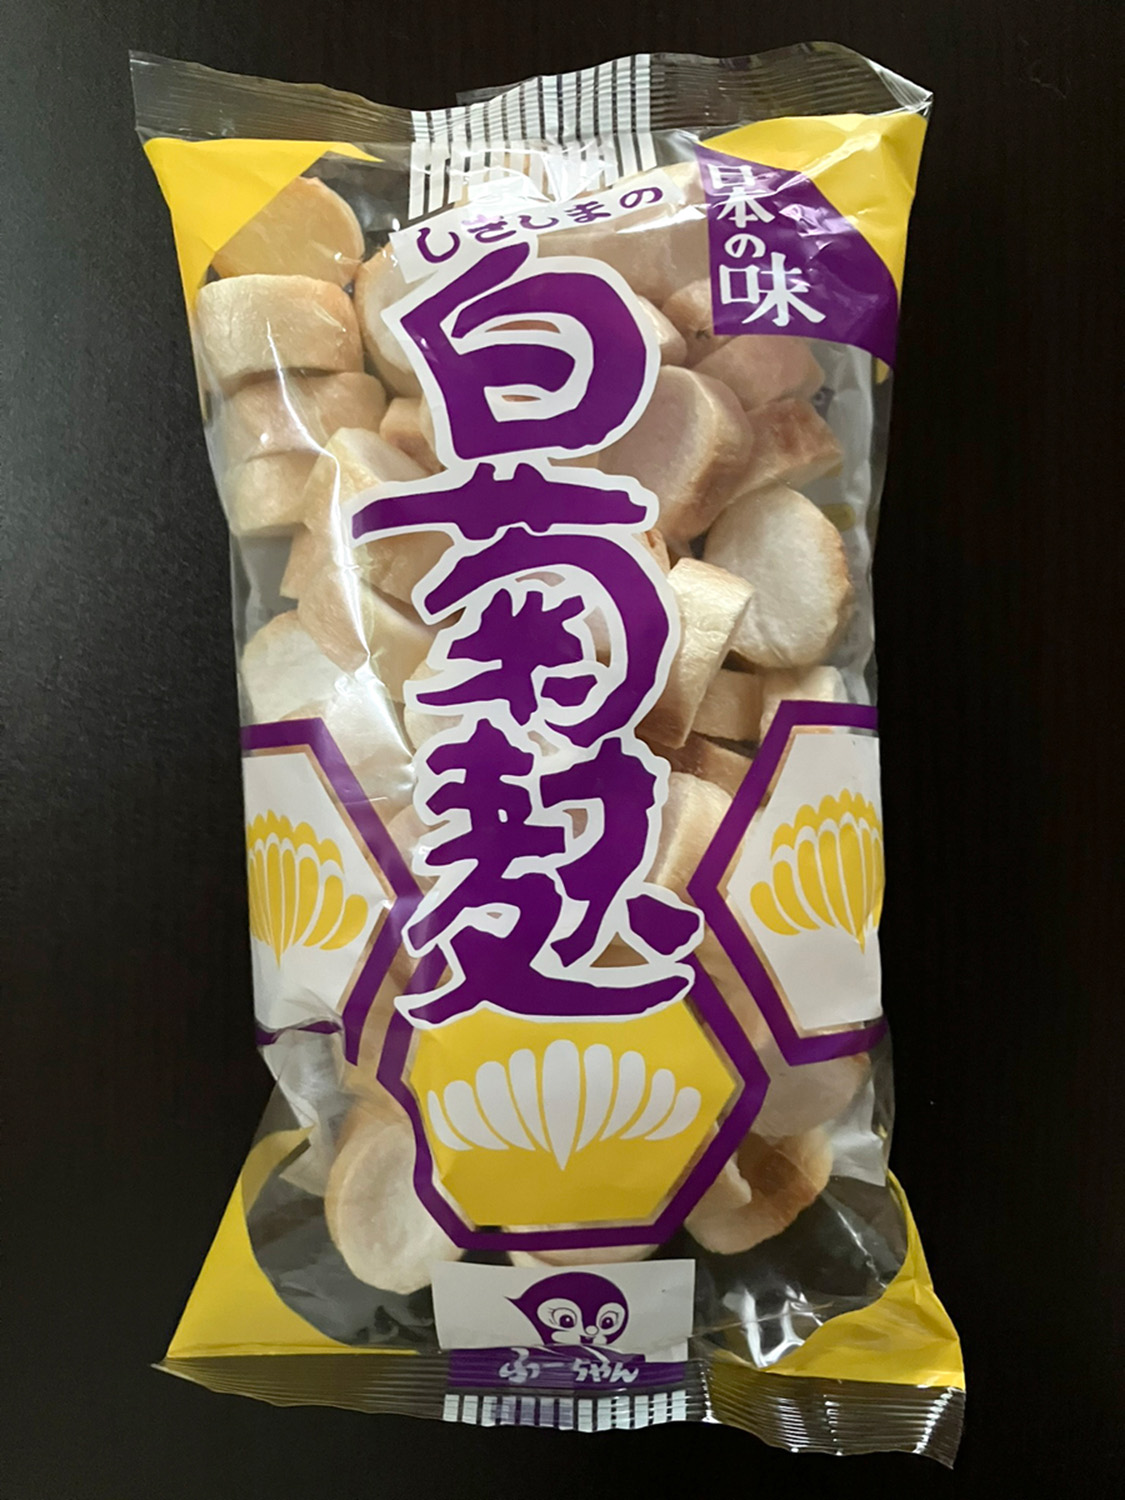 黄色と紫のパッケージが素敵な白菊麩。上に挙げた麩菓子と同じ、岐阜の敷島産業製である。